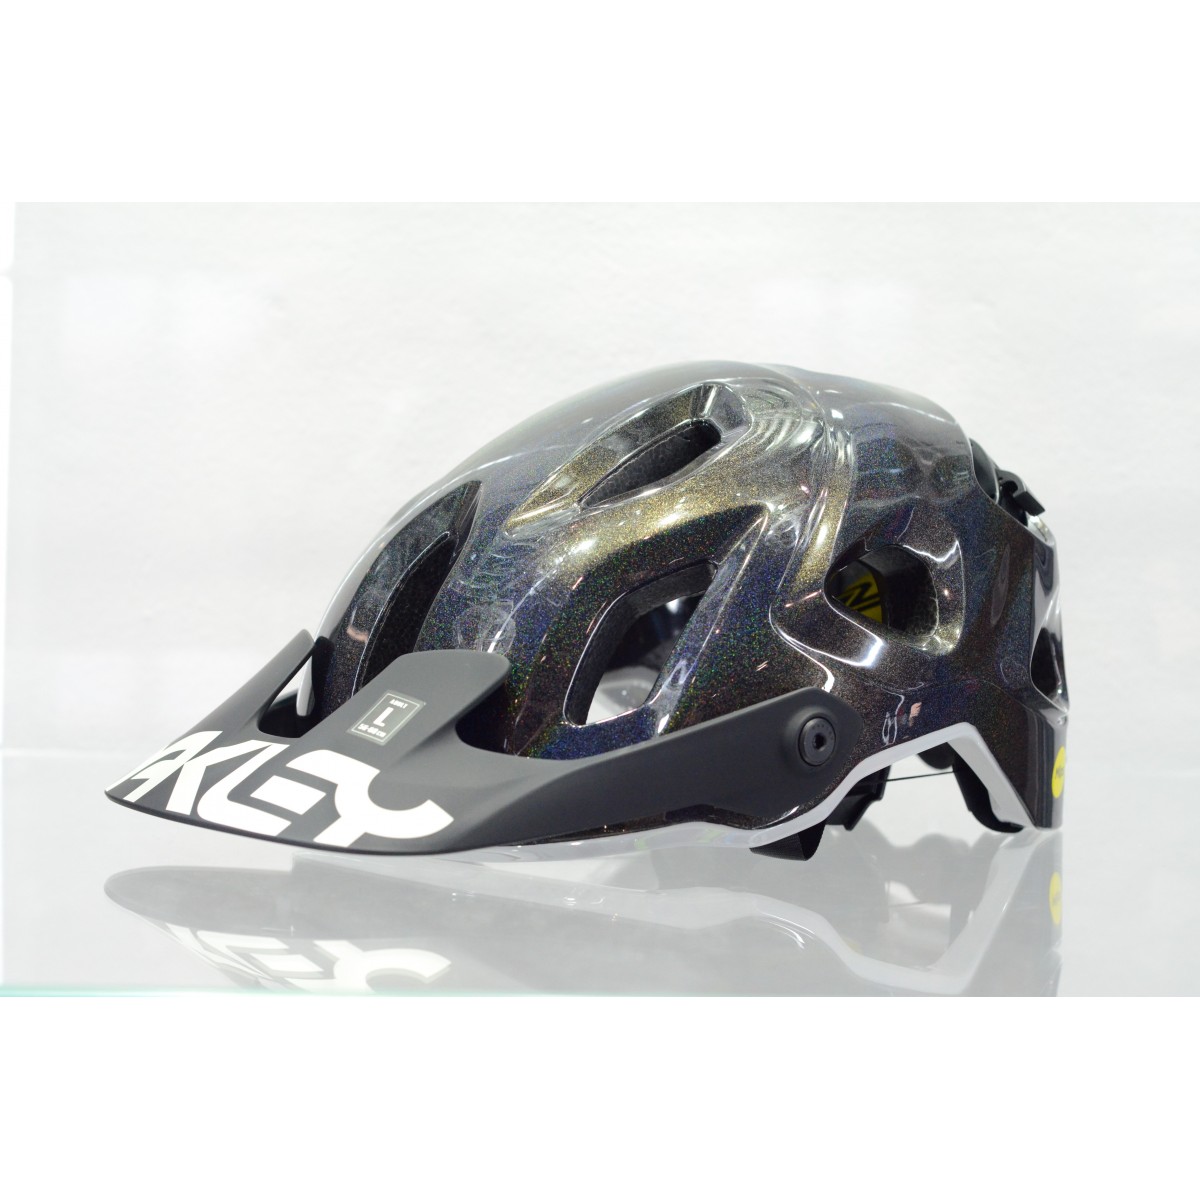 Oakley Drt5 helmet